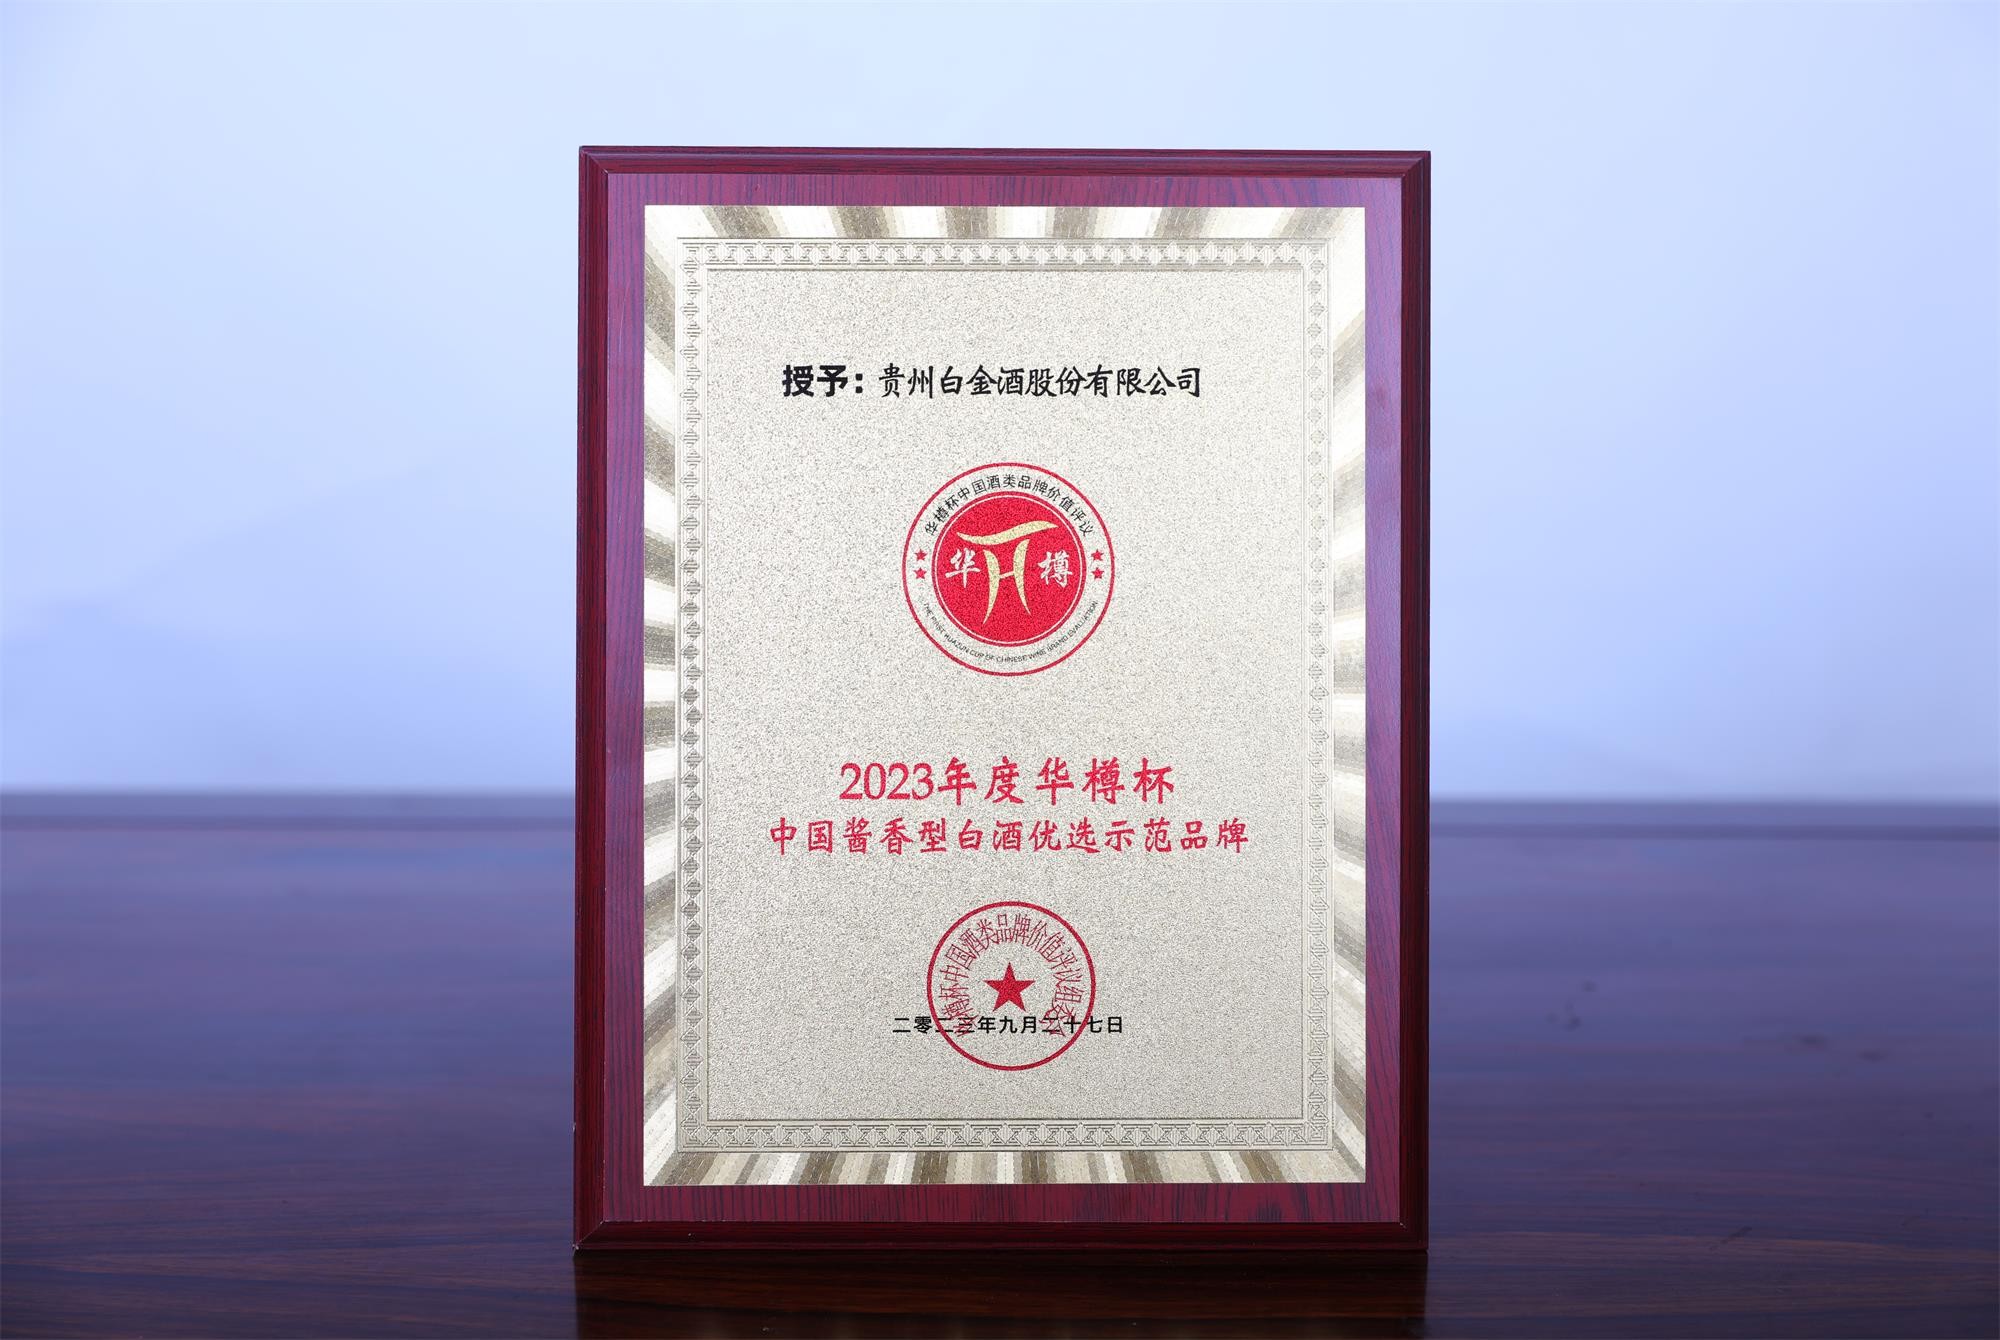 2023年度華樽杯中國醬香型白酒優選示范品牌